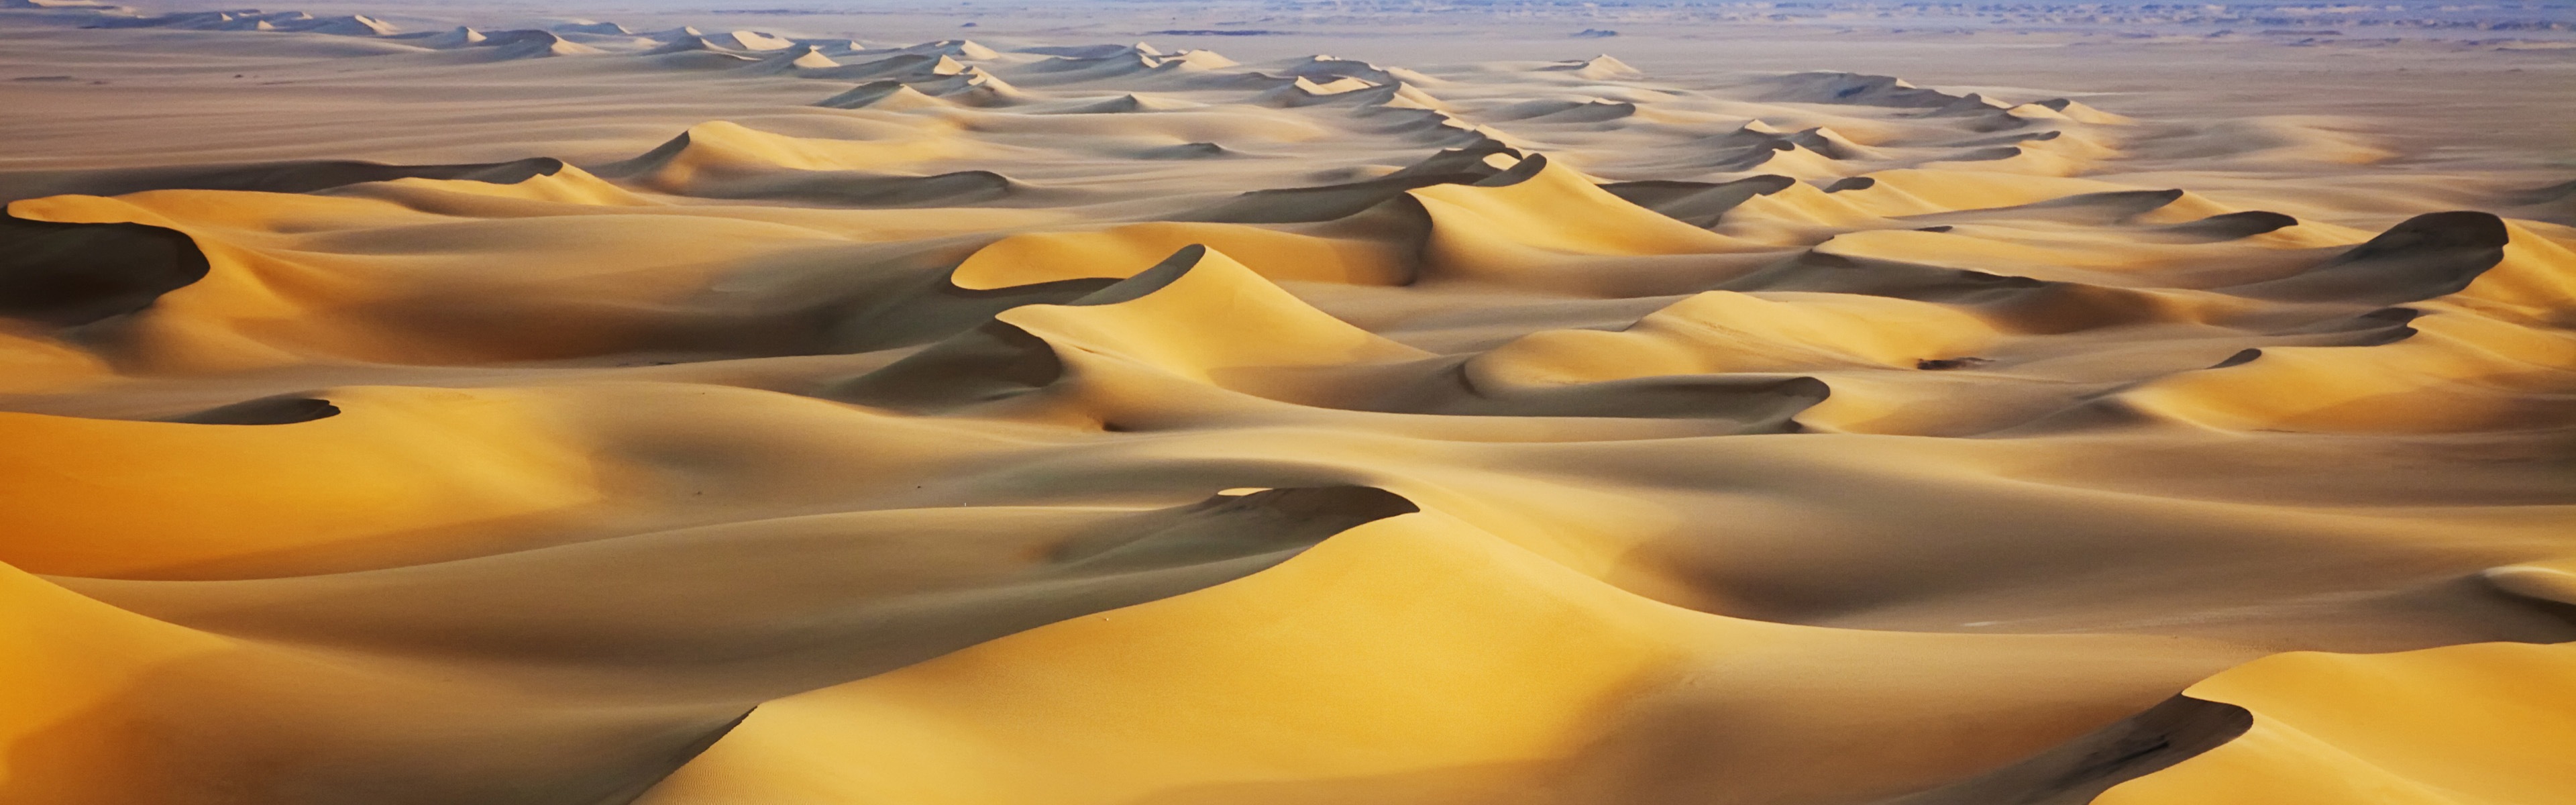 Горячие и засушливые пустыни, Windows 8 панорамные картинки на рабочий стол #4 - 3840x1200